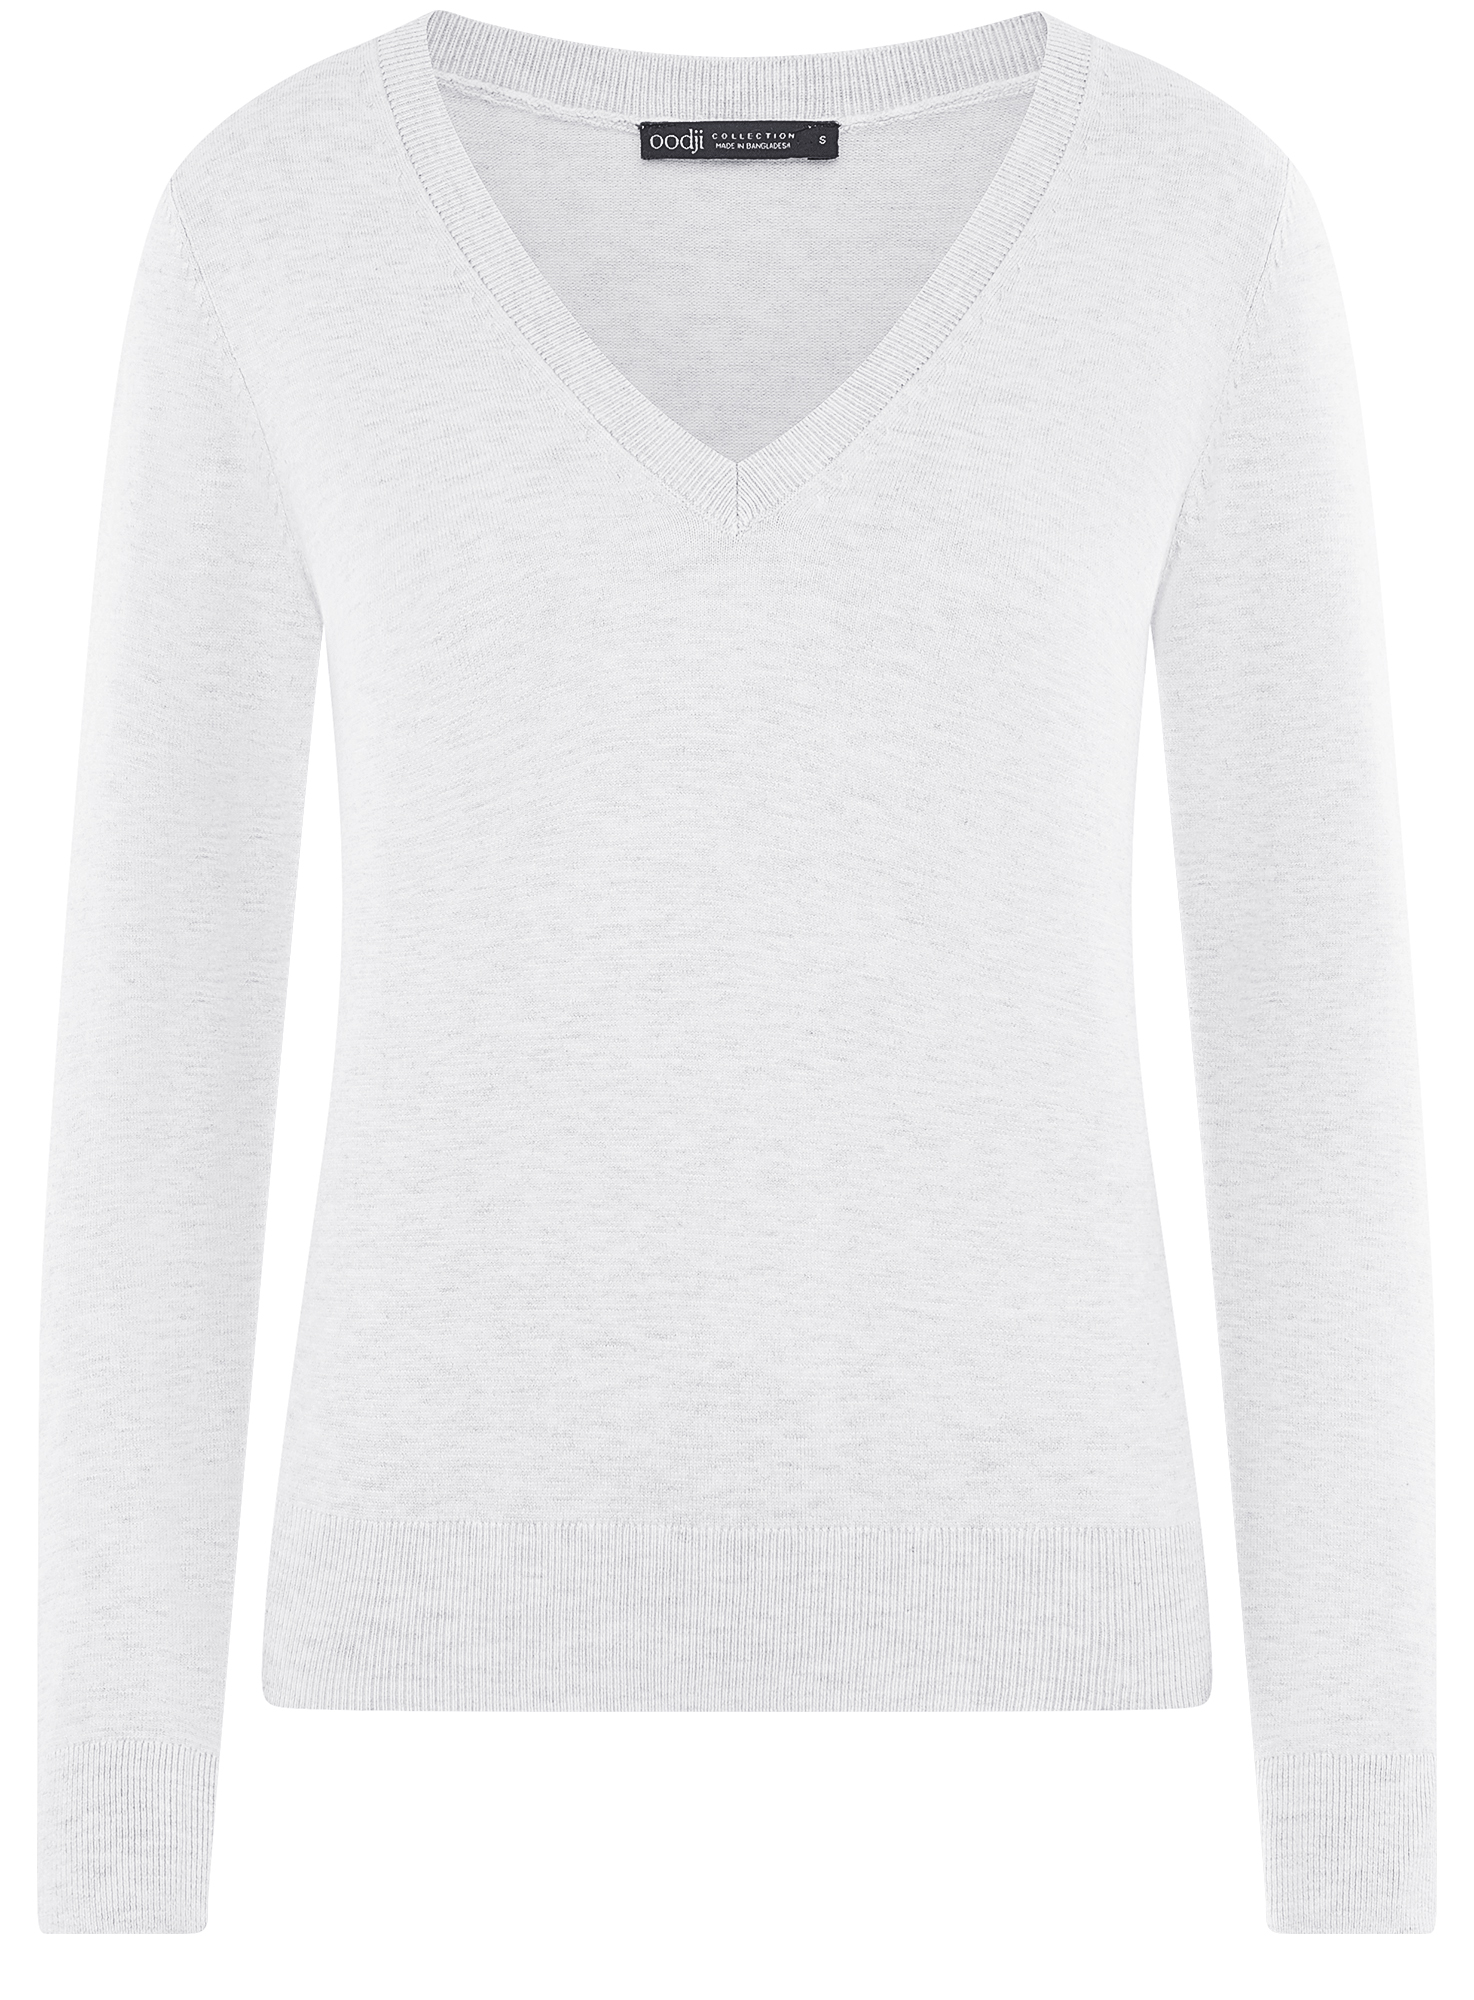 Пуловер женский oodji 73812290-6B серый 2XS